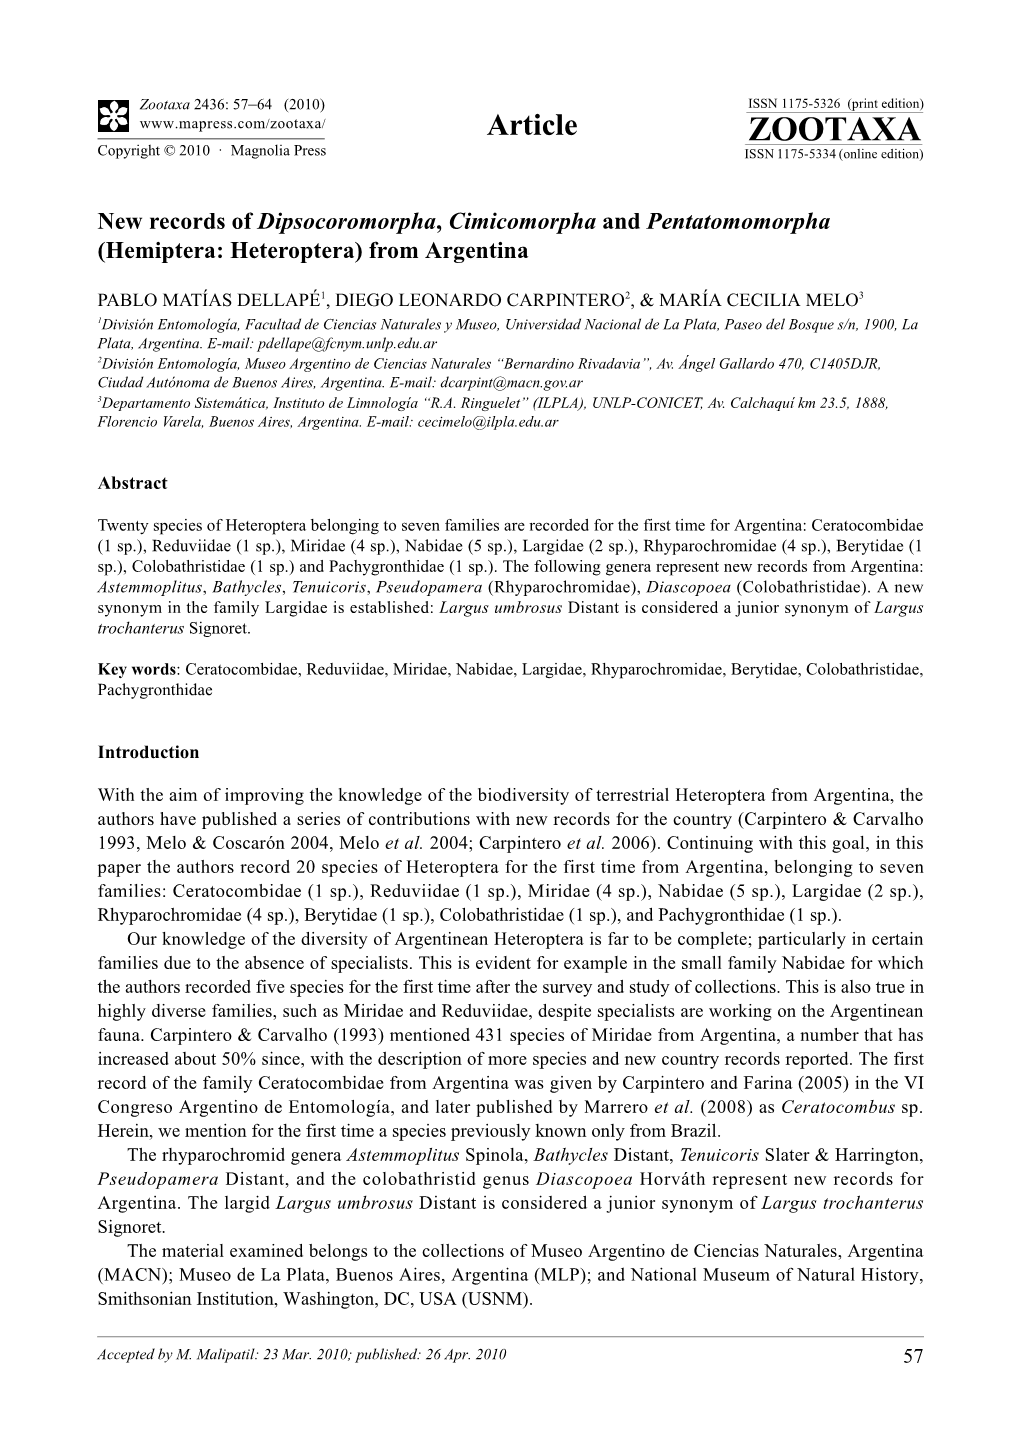 Zootaxa, New Records of Dipsocoromorpha